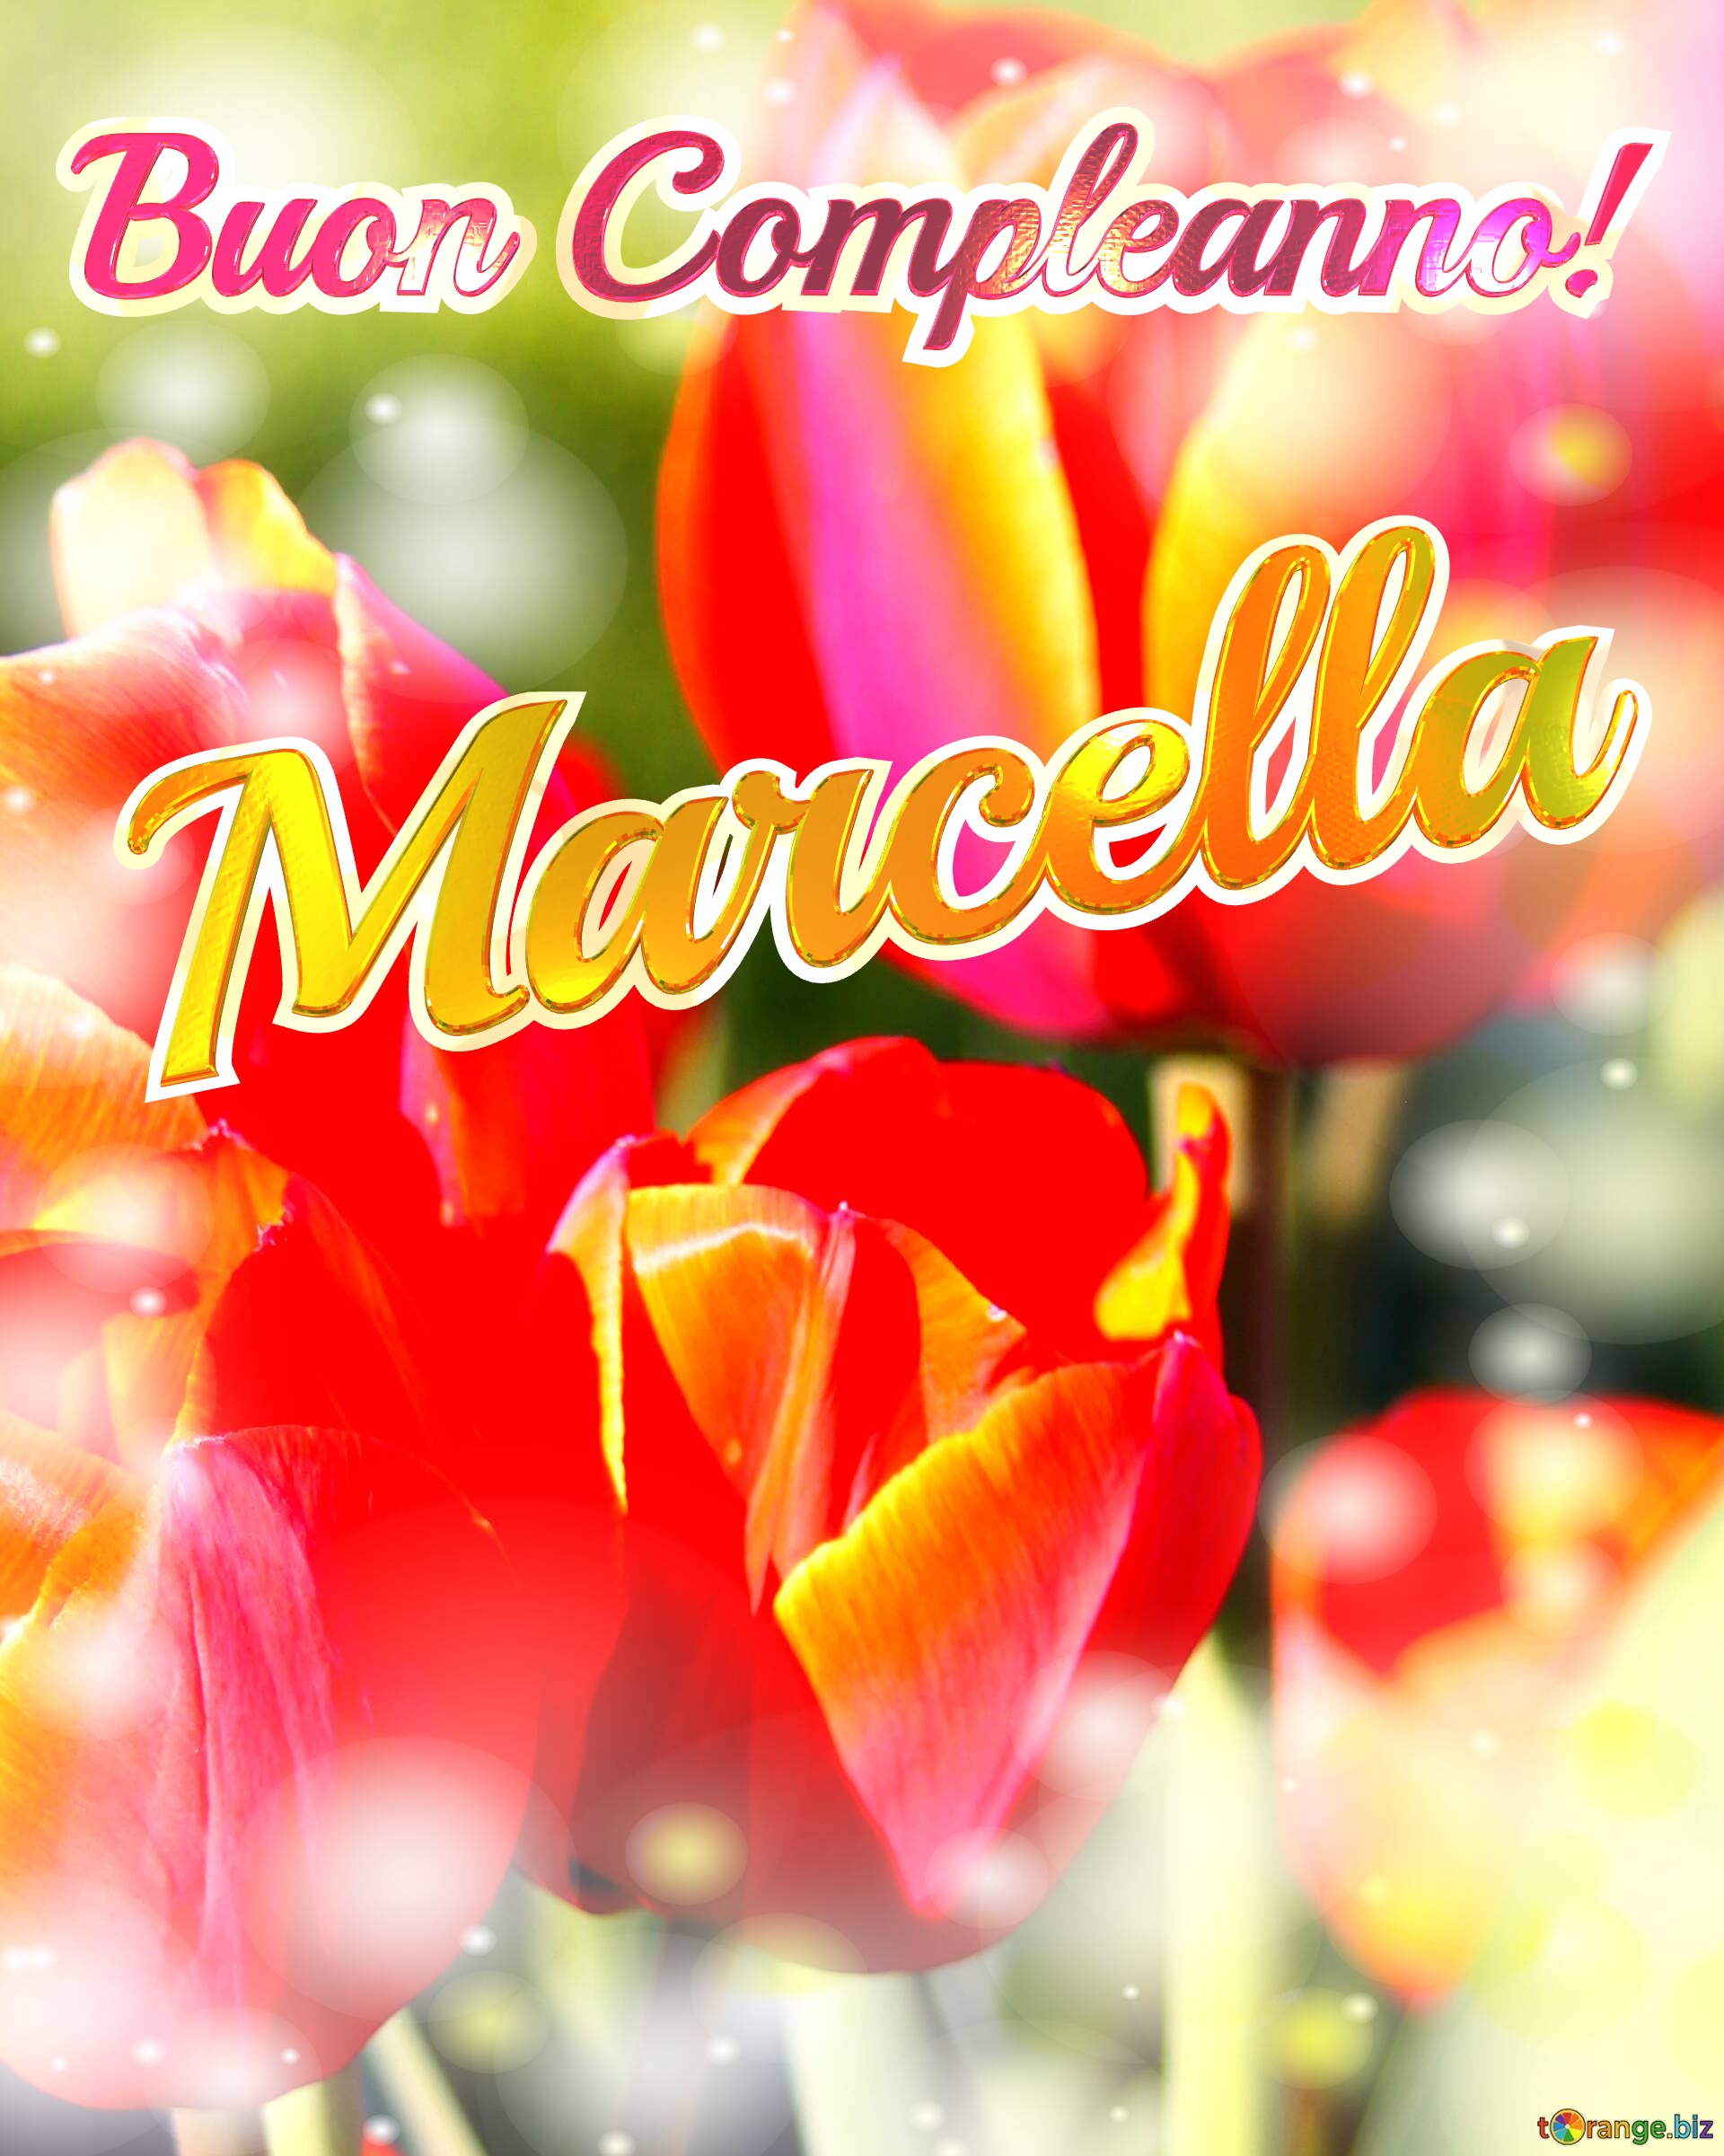 Buon Compleanno! Marcella  La bellezza dei tulipani è un richiamo alla bellezza della vita, auguri per una vita piena di bellezza e soddisfazione. №0